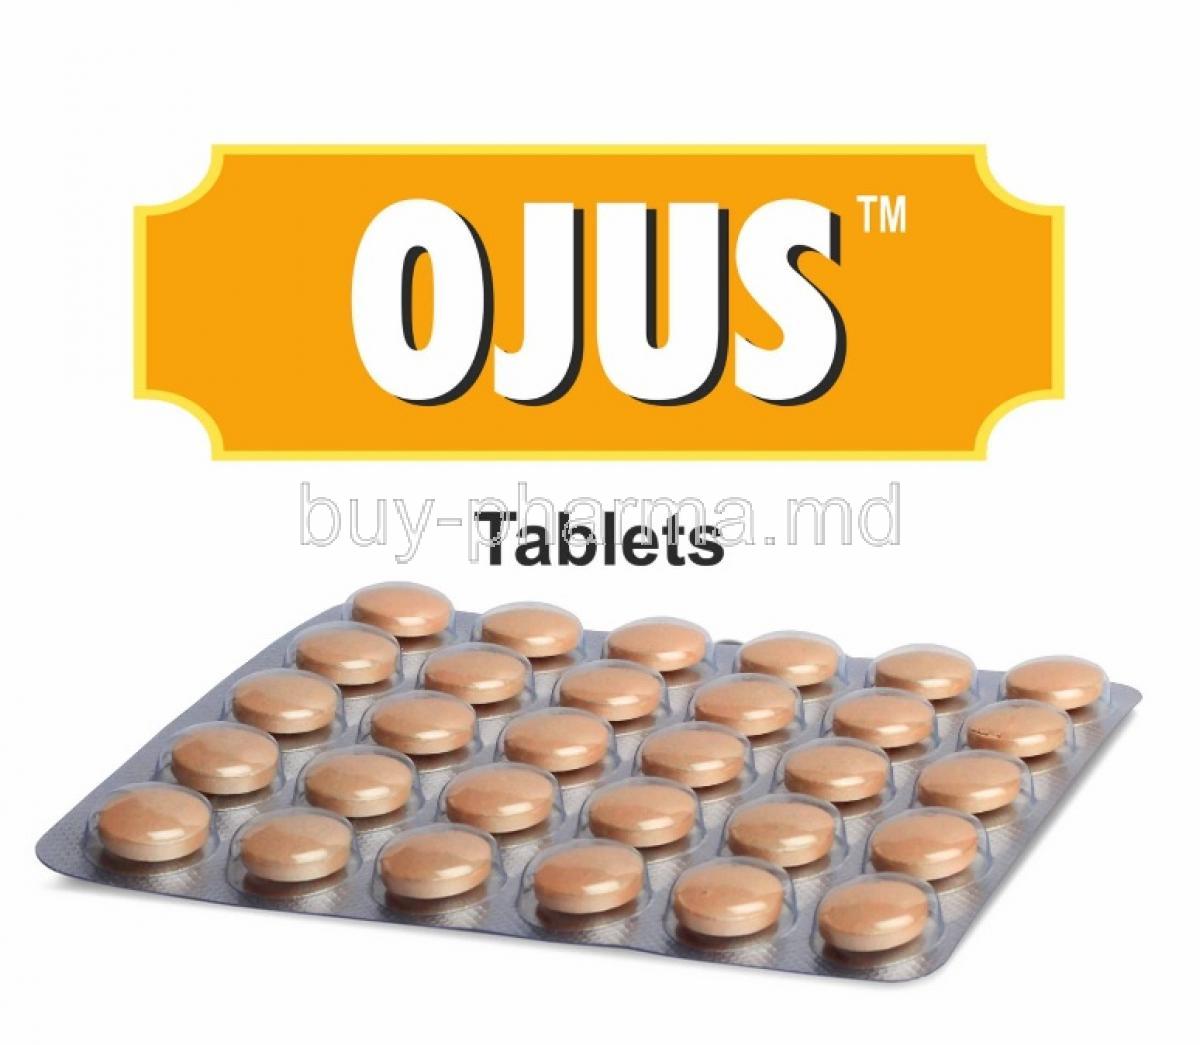 Ojus box and tablets